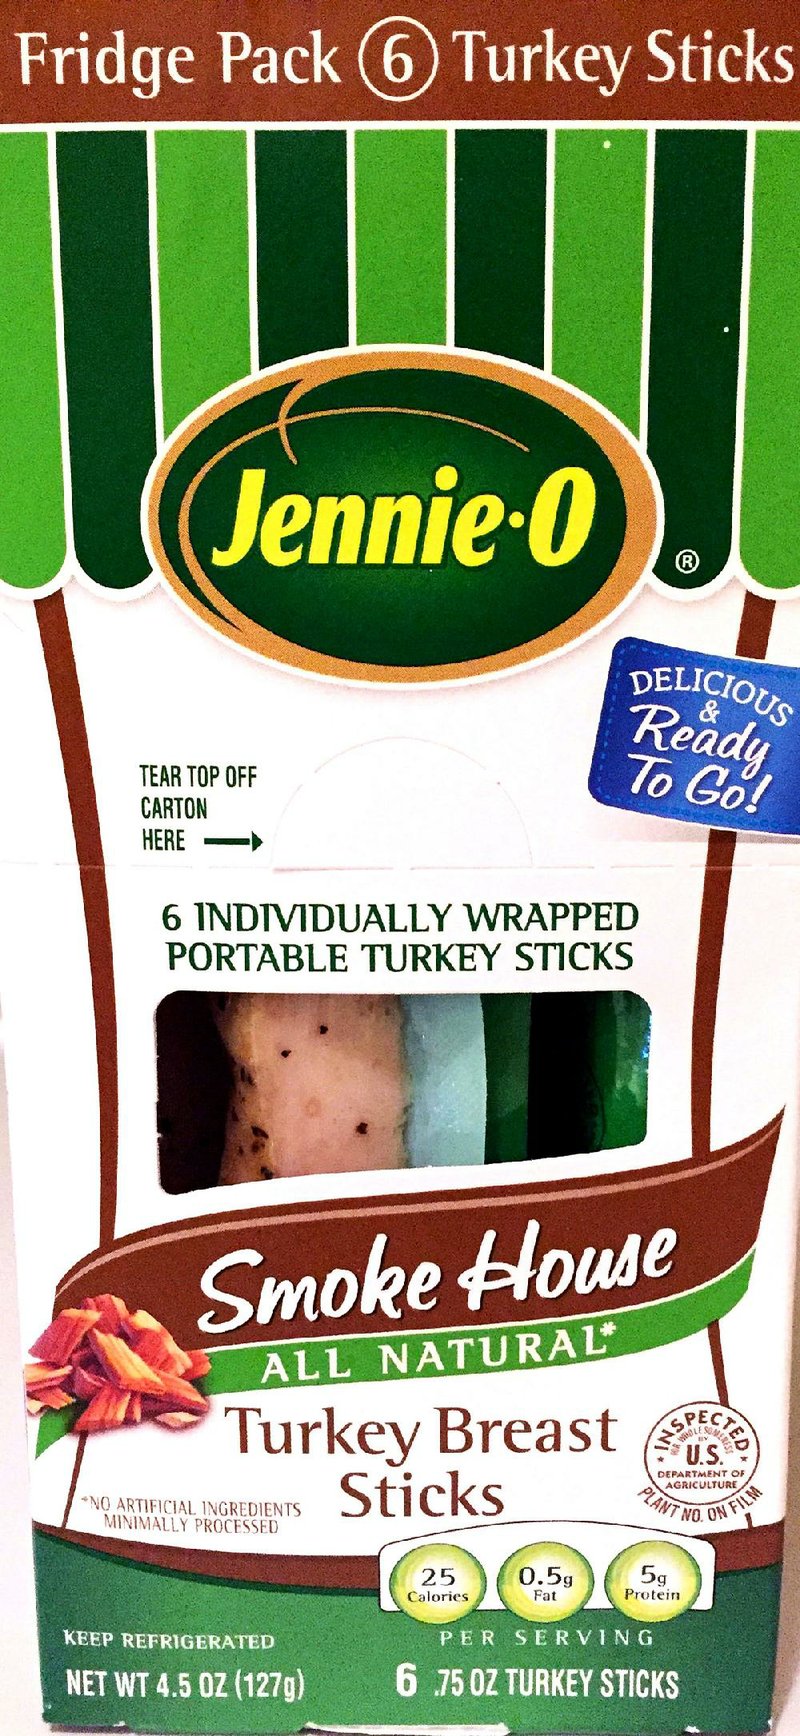 Jennie-O Turkey Breast Sticks. 